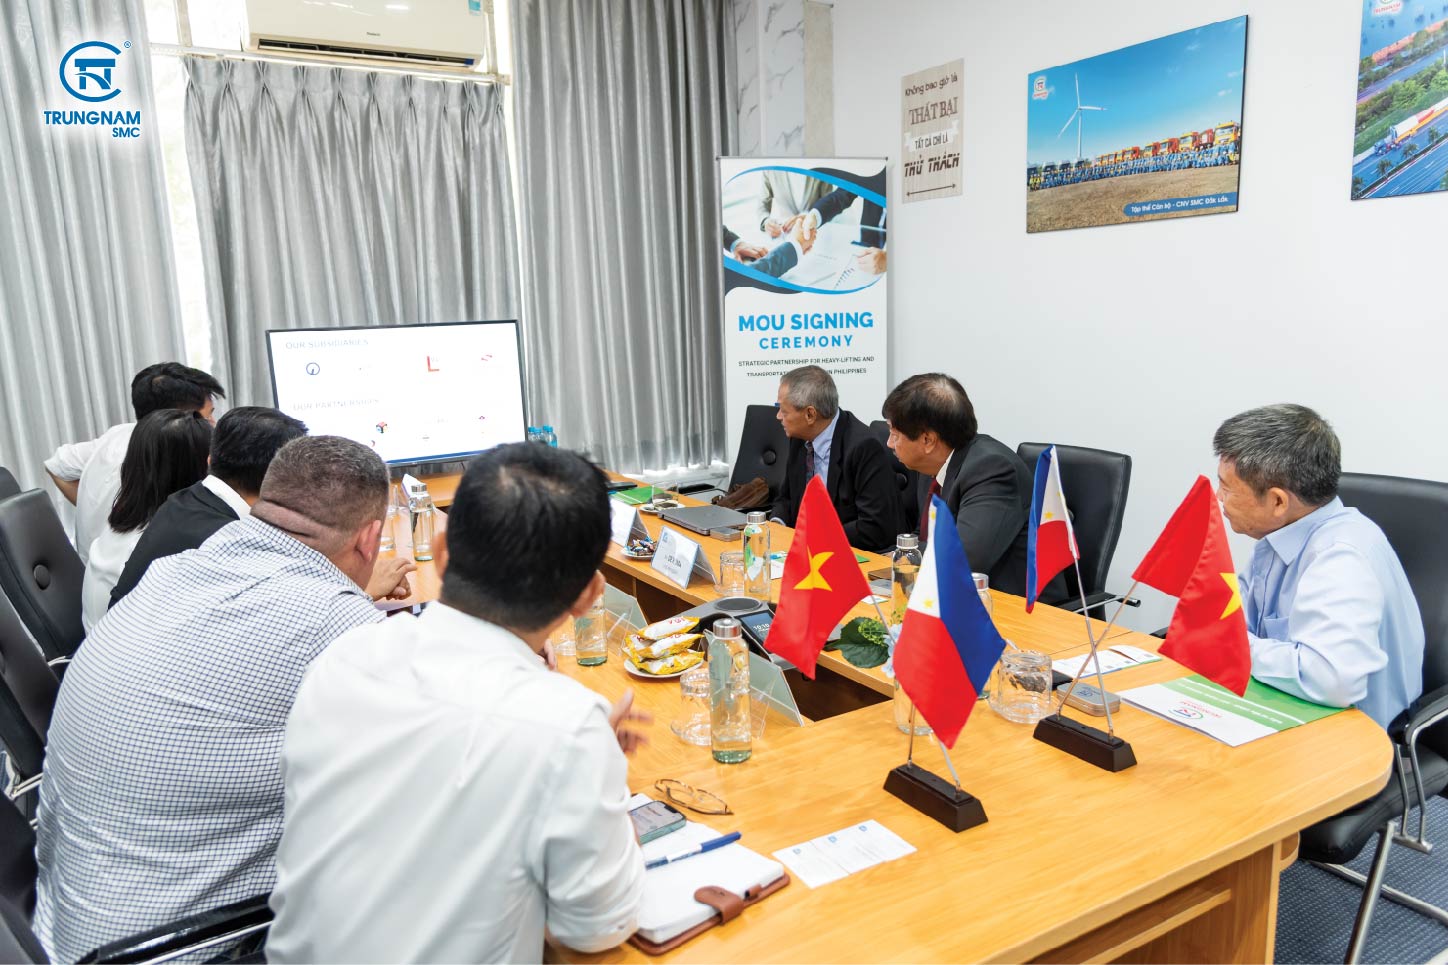 Toàn cảnh buổi ký kết giữa Trungnam SMC và Royal Cargo